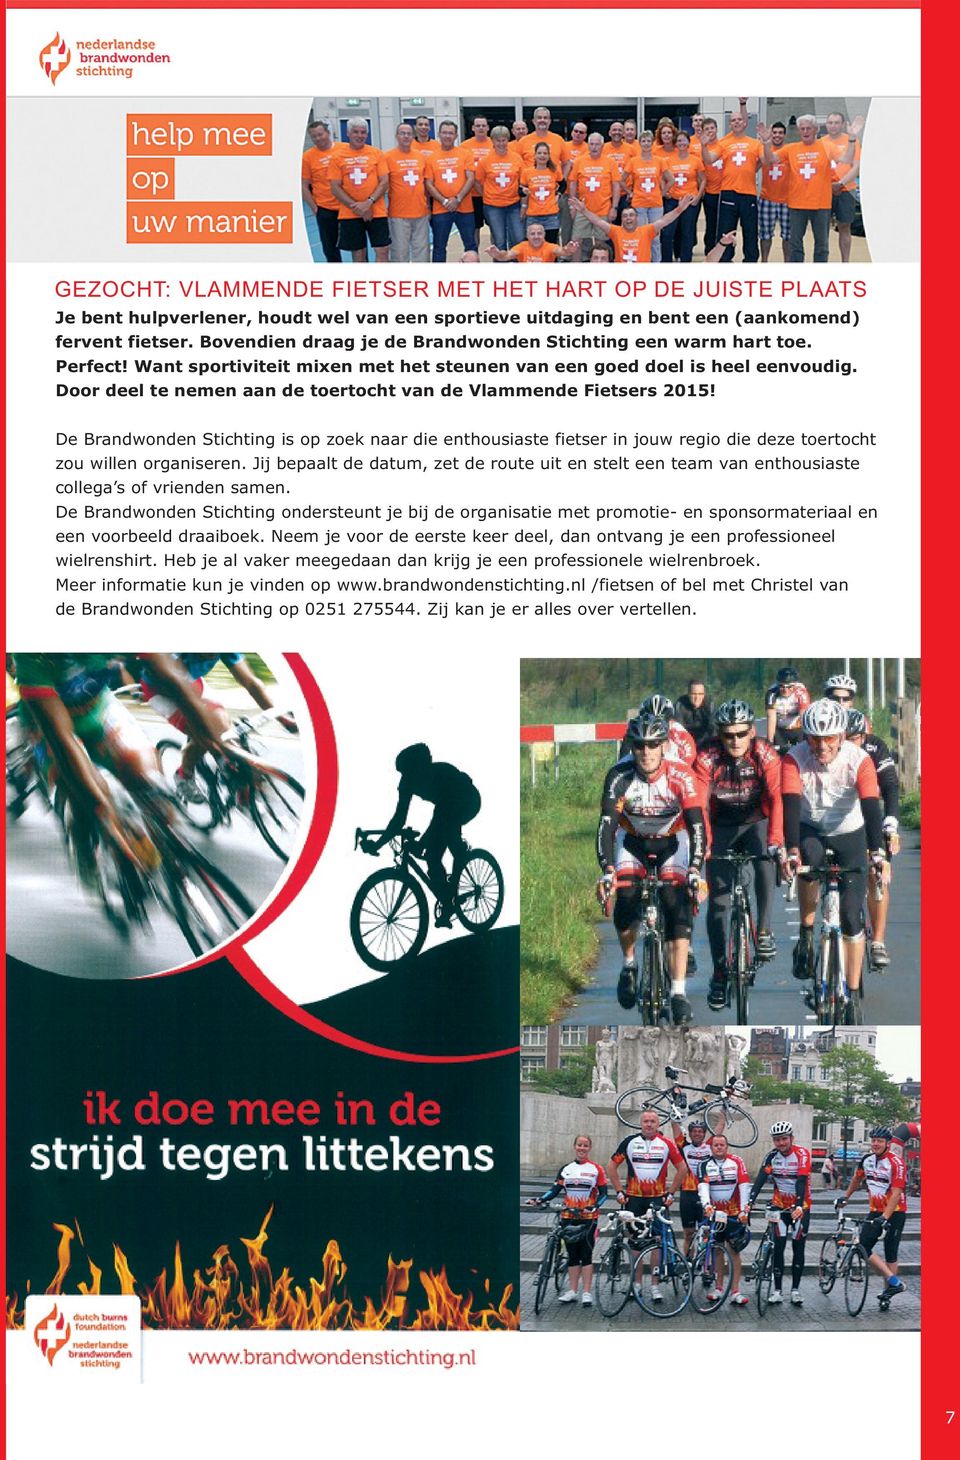 Door deel te nemen aan de toertocht van de Vlammende Fietsers 2015! De Brandwonden Stichting is op zoek naar die enthousiaste fietser in jouw regio die deze toertocht zou willen organiseren.